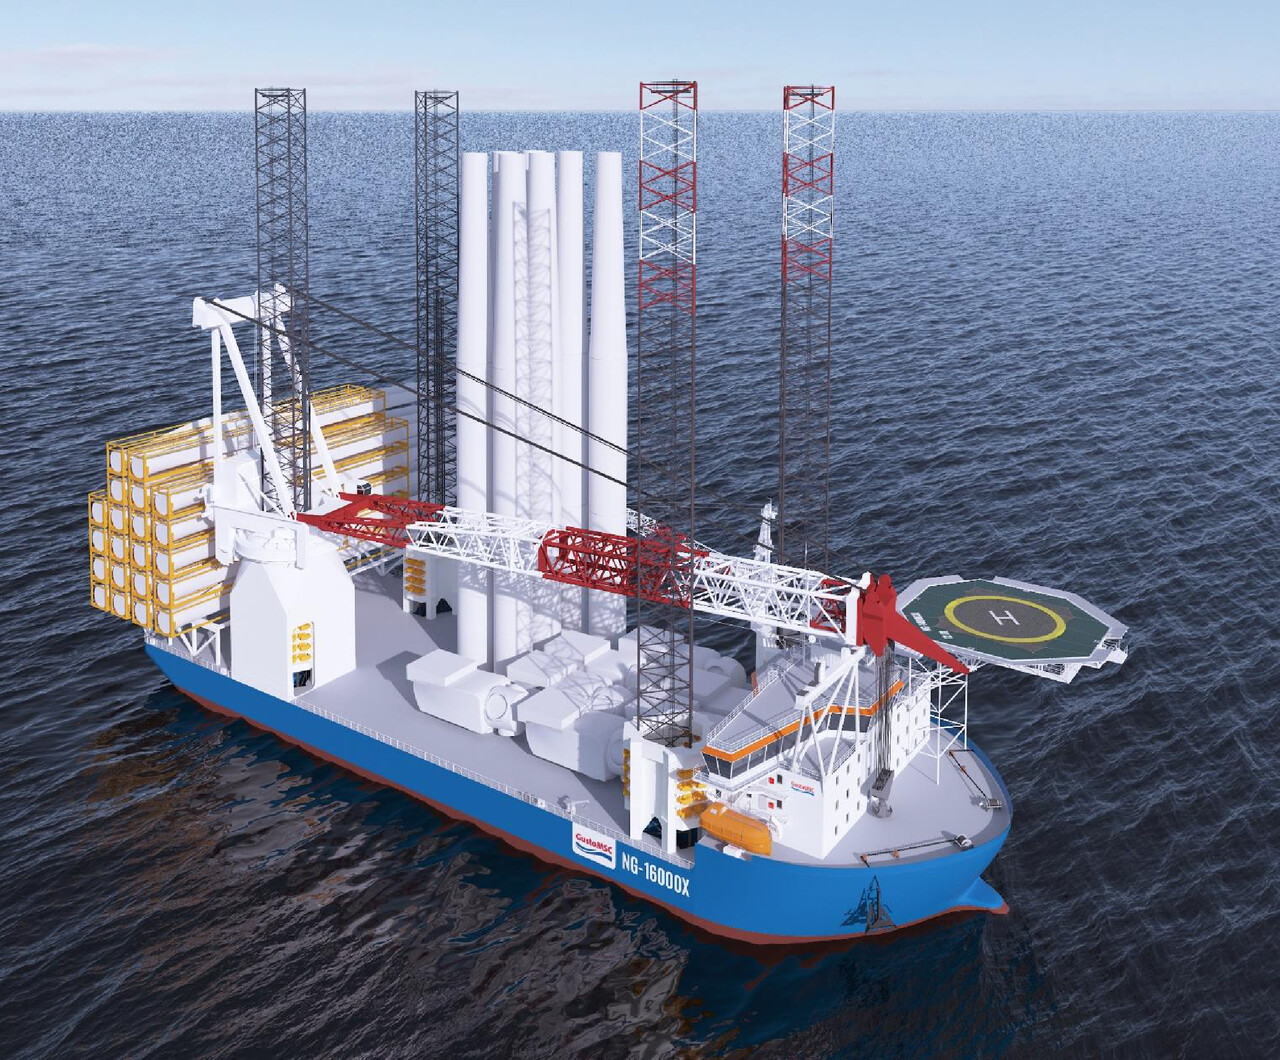 대우조선해양이 건조중인 대형 해상풍력발전기 설치선 ‘NG-16000X’ 디자인 조감도